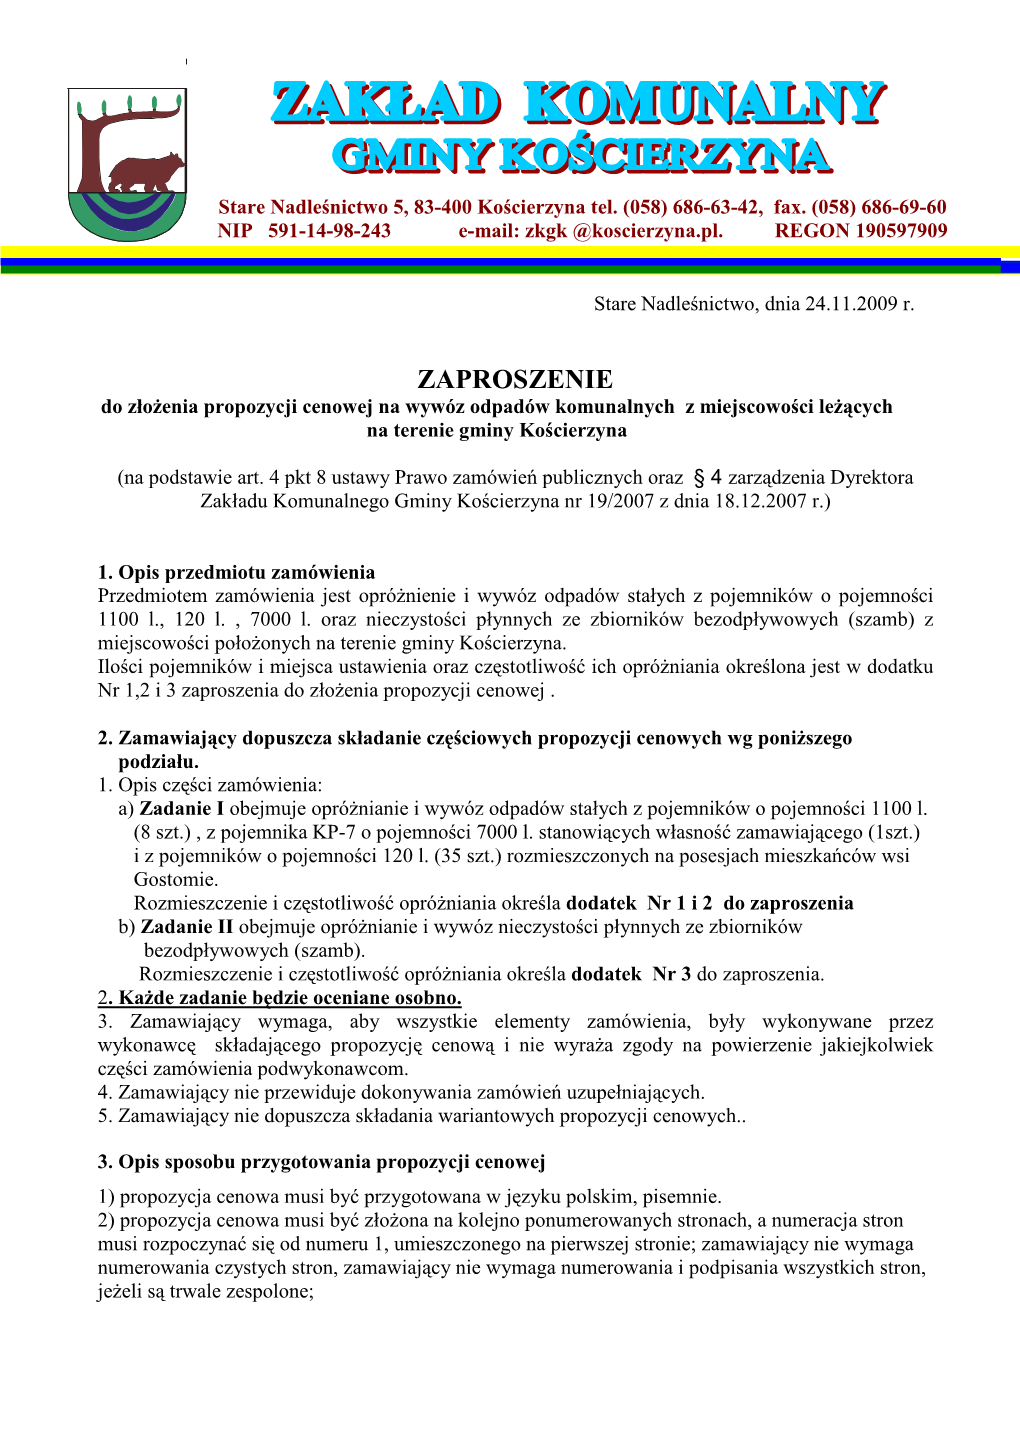 ZKGK MS 24-11-2009 Zaproszenie Do Złożenia Propozycji Cenowej Na